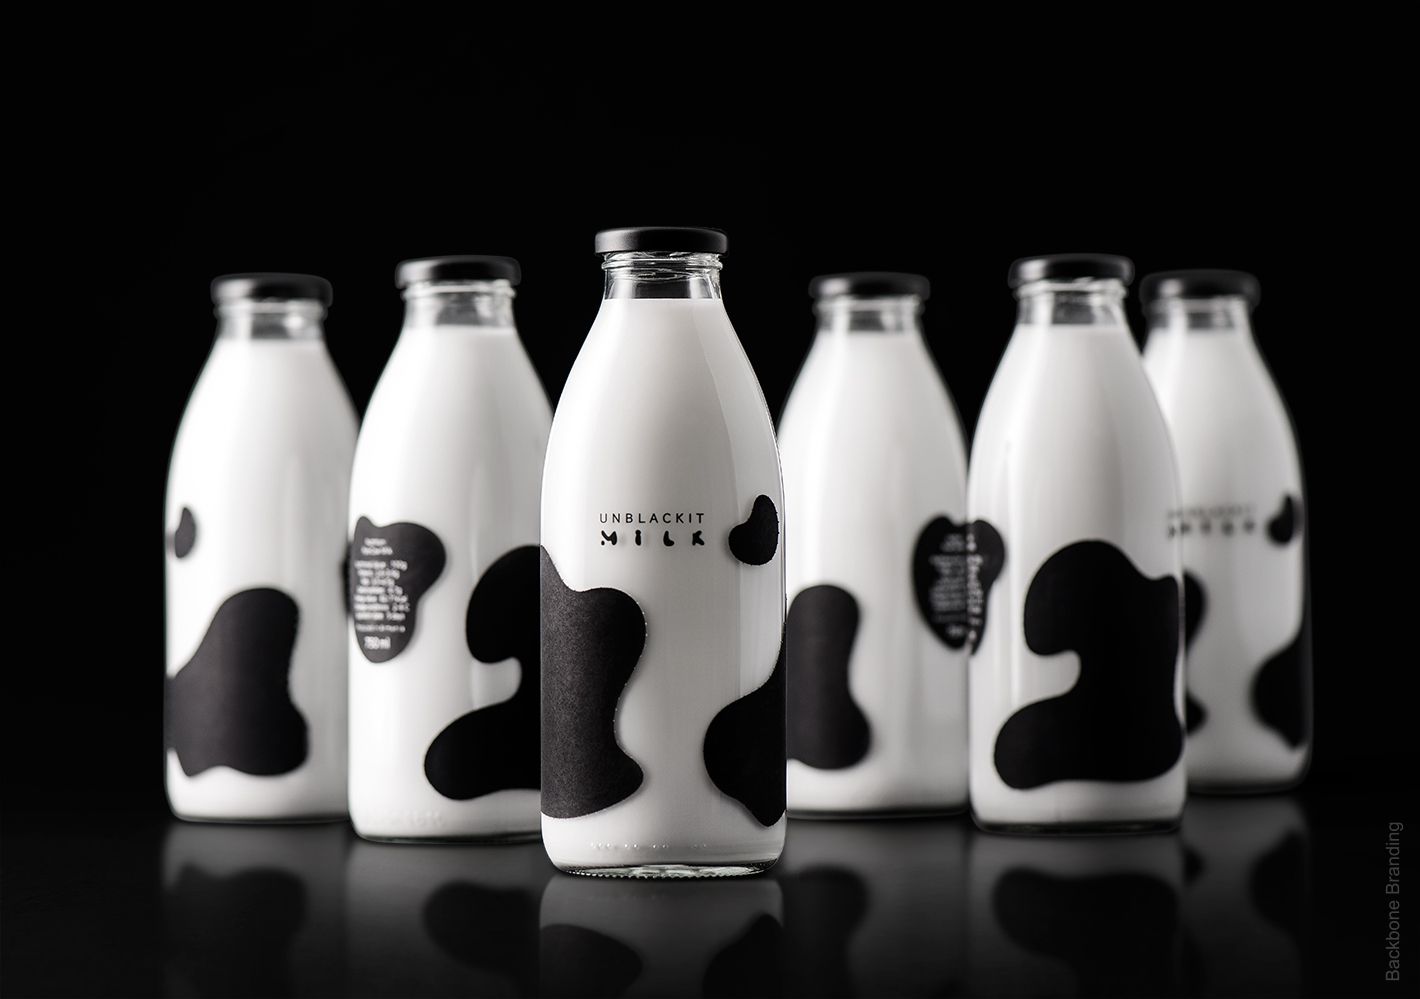 Le lait, c'est beau ! #2 - Top 20 des bouteilles de lait les plus créatives  - Communication (Agro)alimentaire